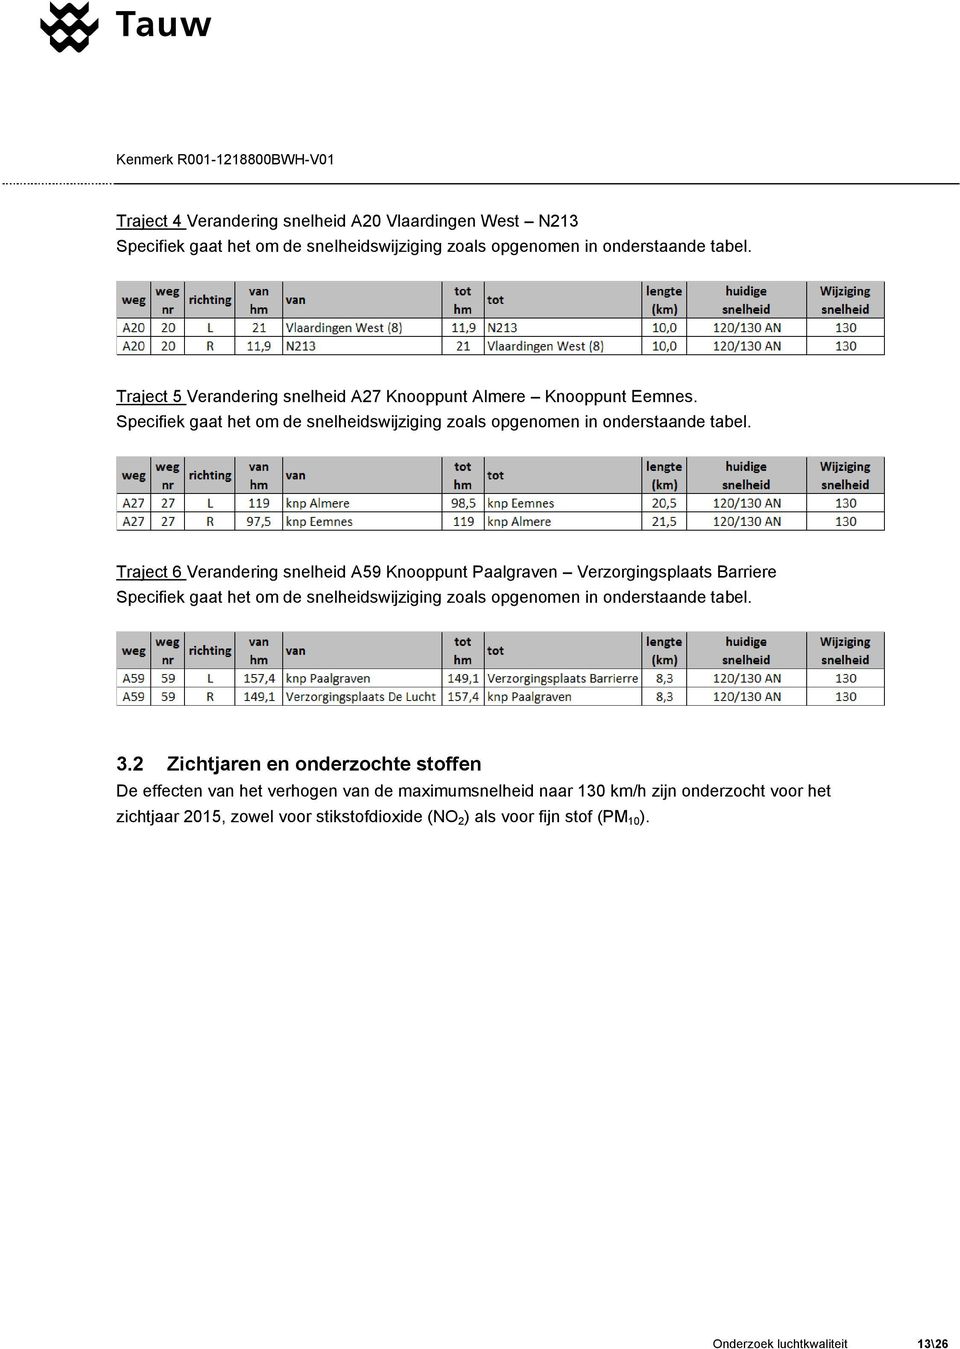 Traject 6 Verandering snelheid A59 Knooppunt Paalgraven Verzorgingsplaats Barriere Specifiek gaat het om de snelheidswijziging zoals opgenomen in onderstaande tabel. 3.